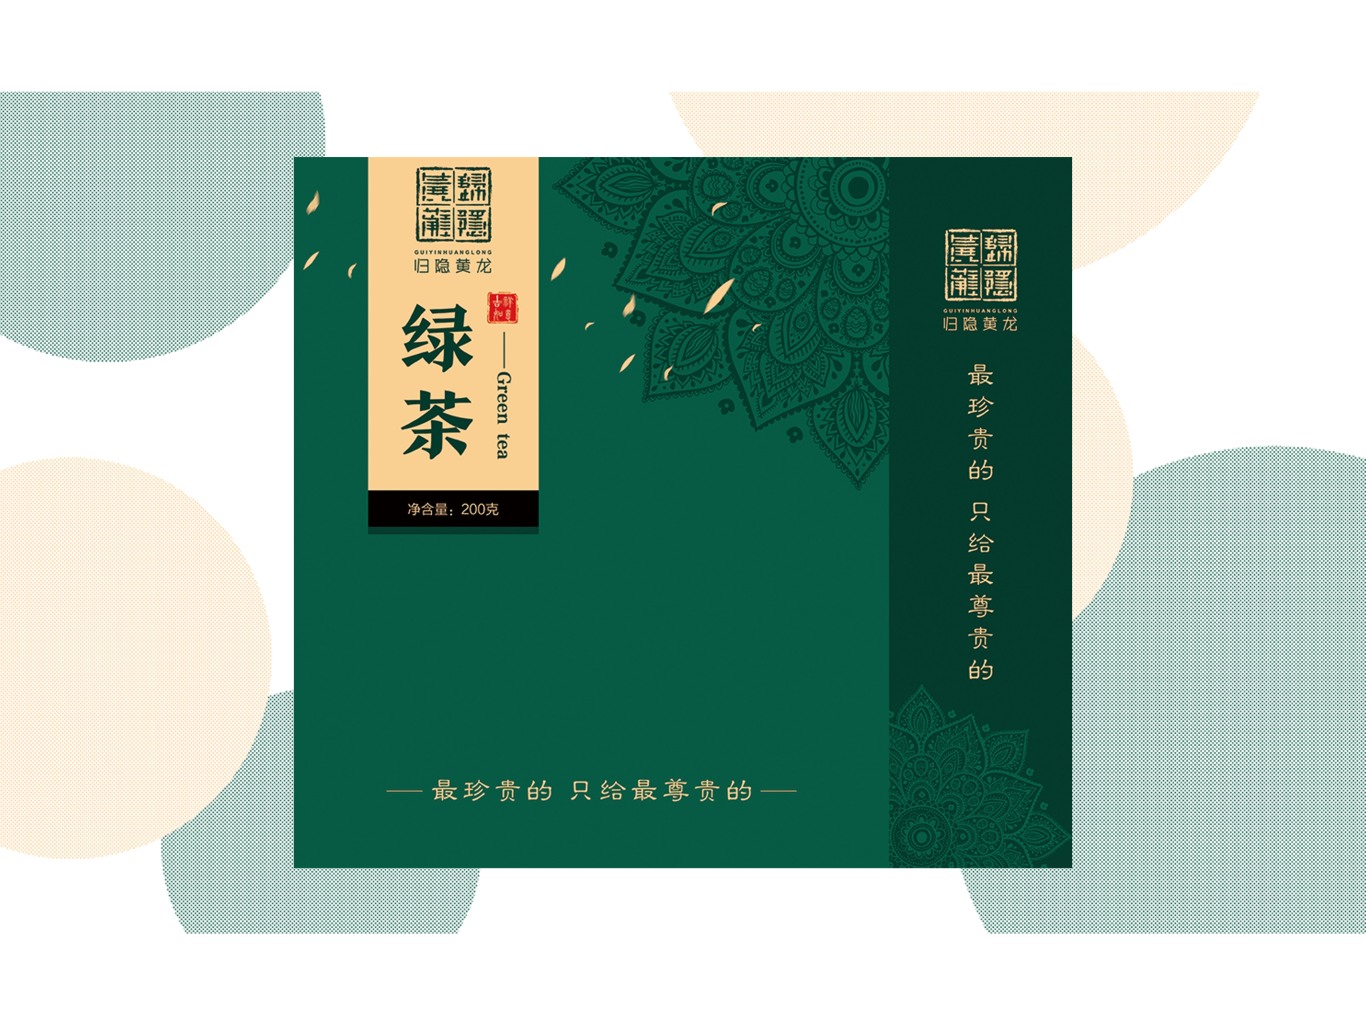 归隐黄龙生态茶厂logo图2